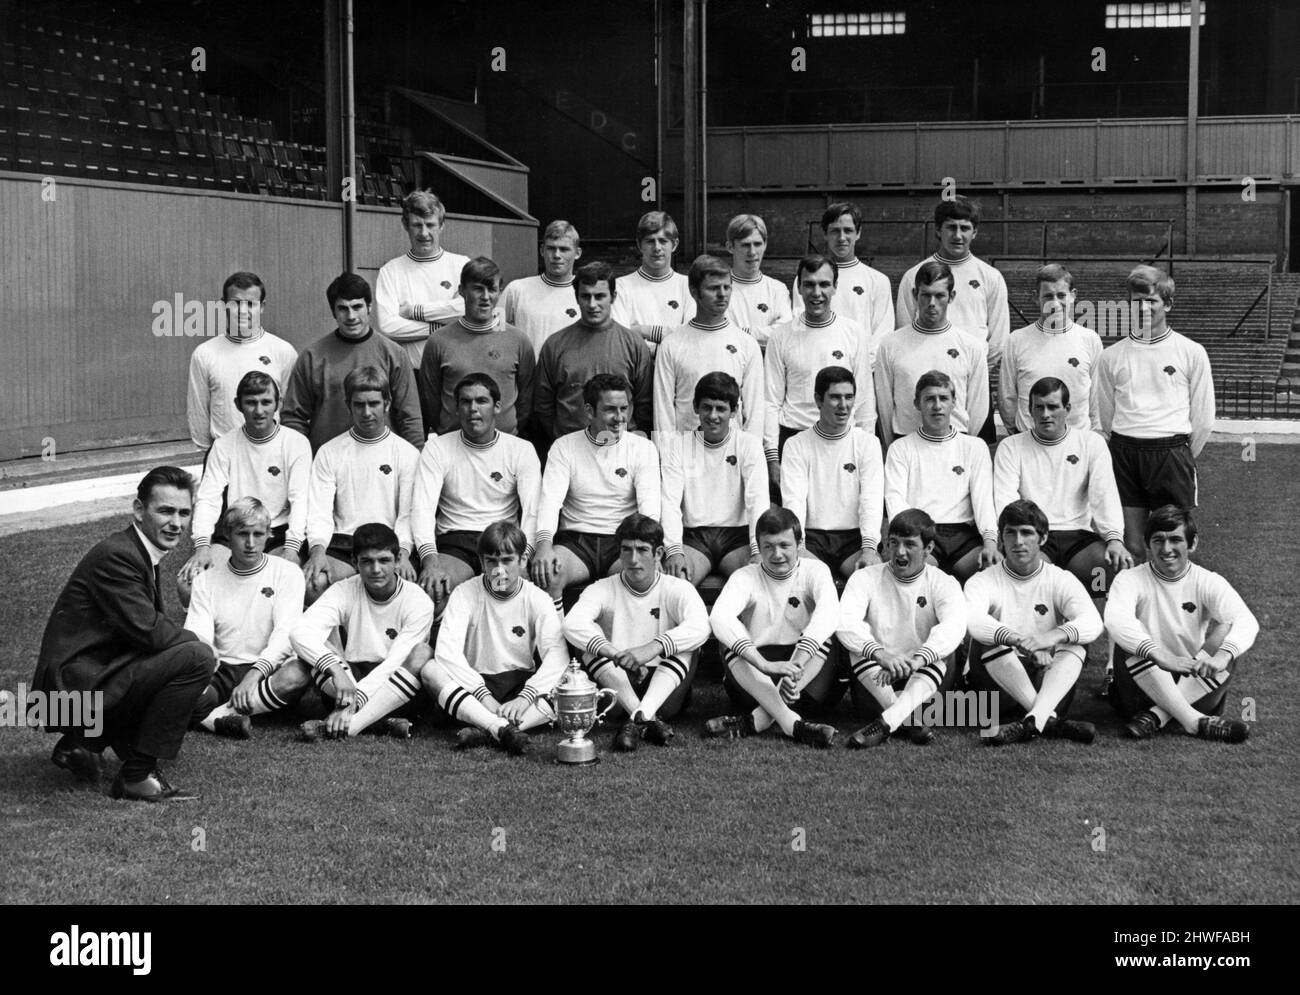 Derby County spielt Mitarbeiter für die Saison 1969-1970. Hintere Reihe, von links nach rechts, Ein Hinton, R Brooks, T Kane, J. McCluskey, R. Patrick, R. McFarland. 2. Reihe von hinten, von links nach rechts, A Stewart, L Green, K Boulton, A Ludzic, P Wright, T Rhodes, P Daniel, J Walker, Ein Durban. 3. Reihe von hinten, von links nach rechts, J Richardson, G Bourne, F Wignall, D MacKay, R Webster, J Robson, J McGovern, J O'Hare. Vordere Reihe, von links nach rechts, R Marlowe, D McCabe, J Mason, K Blair, J Simms, W Carlin, K Hector, M Cullerton. 7.. Juli 1969. Stockfoto